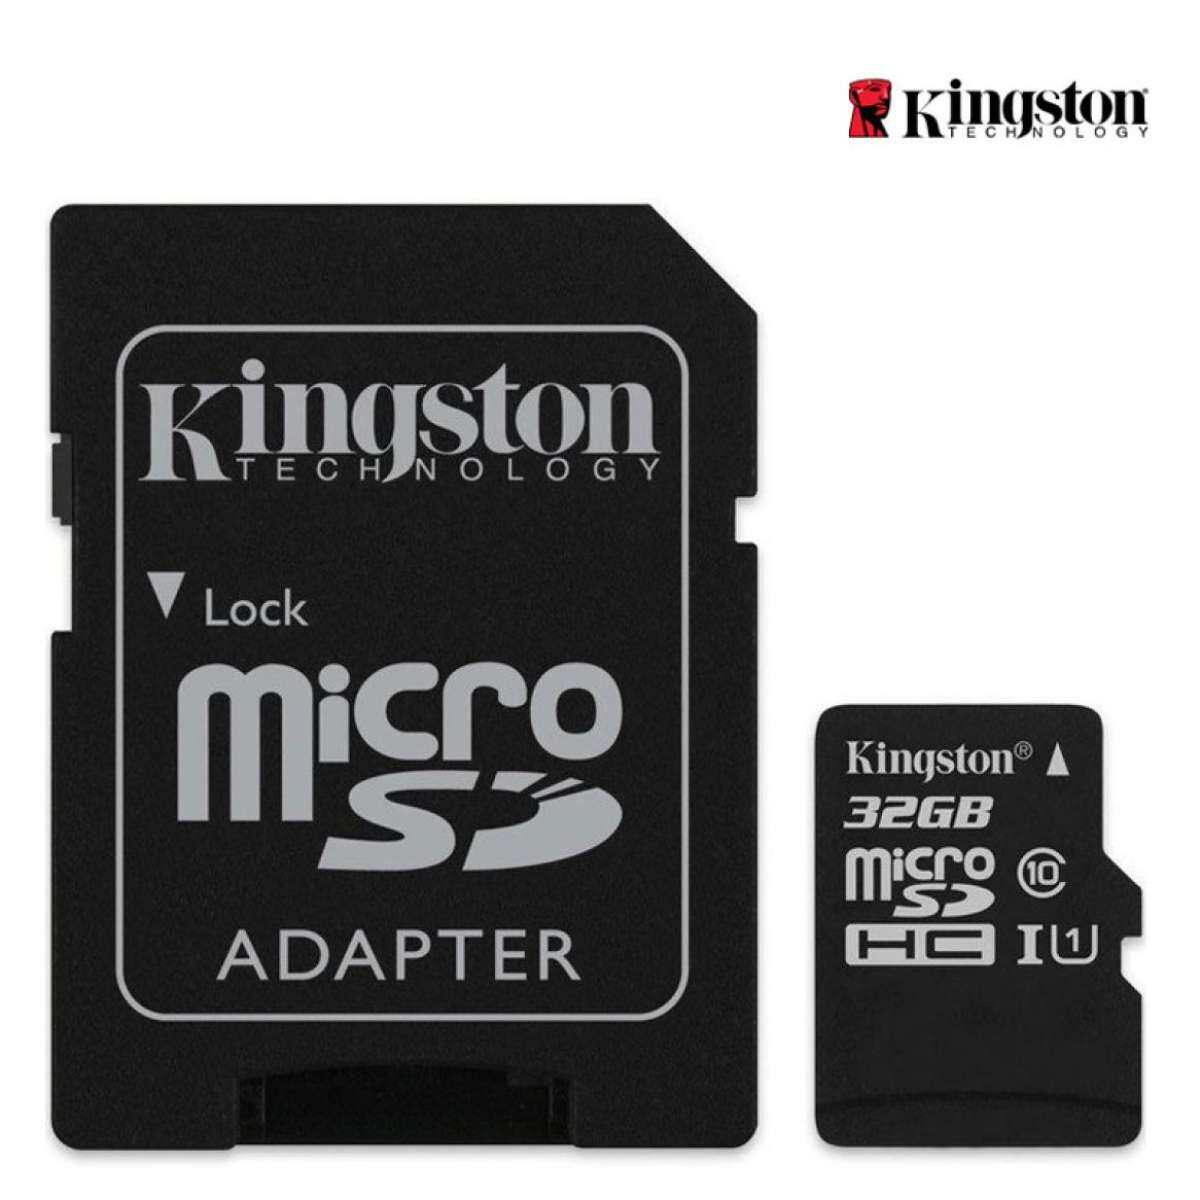 ภาพประกอบของ สินค้าพร้อมส่ง  [[ของแท้]]เมมเพิ่มพื้นที่ความจำ Kingston 32GB Class 10 Micro SD SDHC คิงส์ตัน เมมโมรี่การ์ด 32 GB